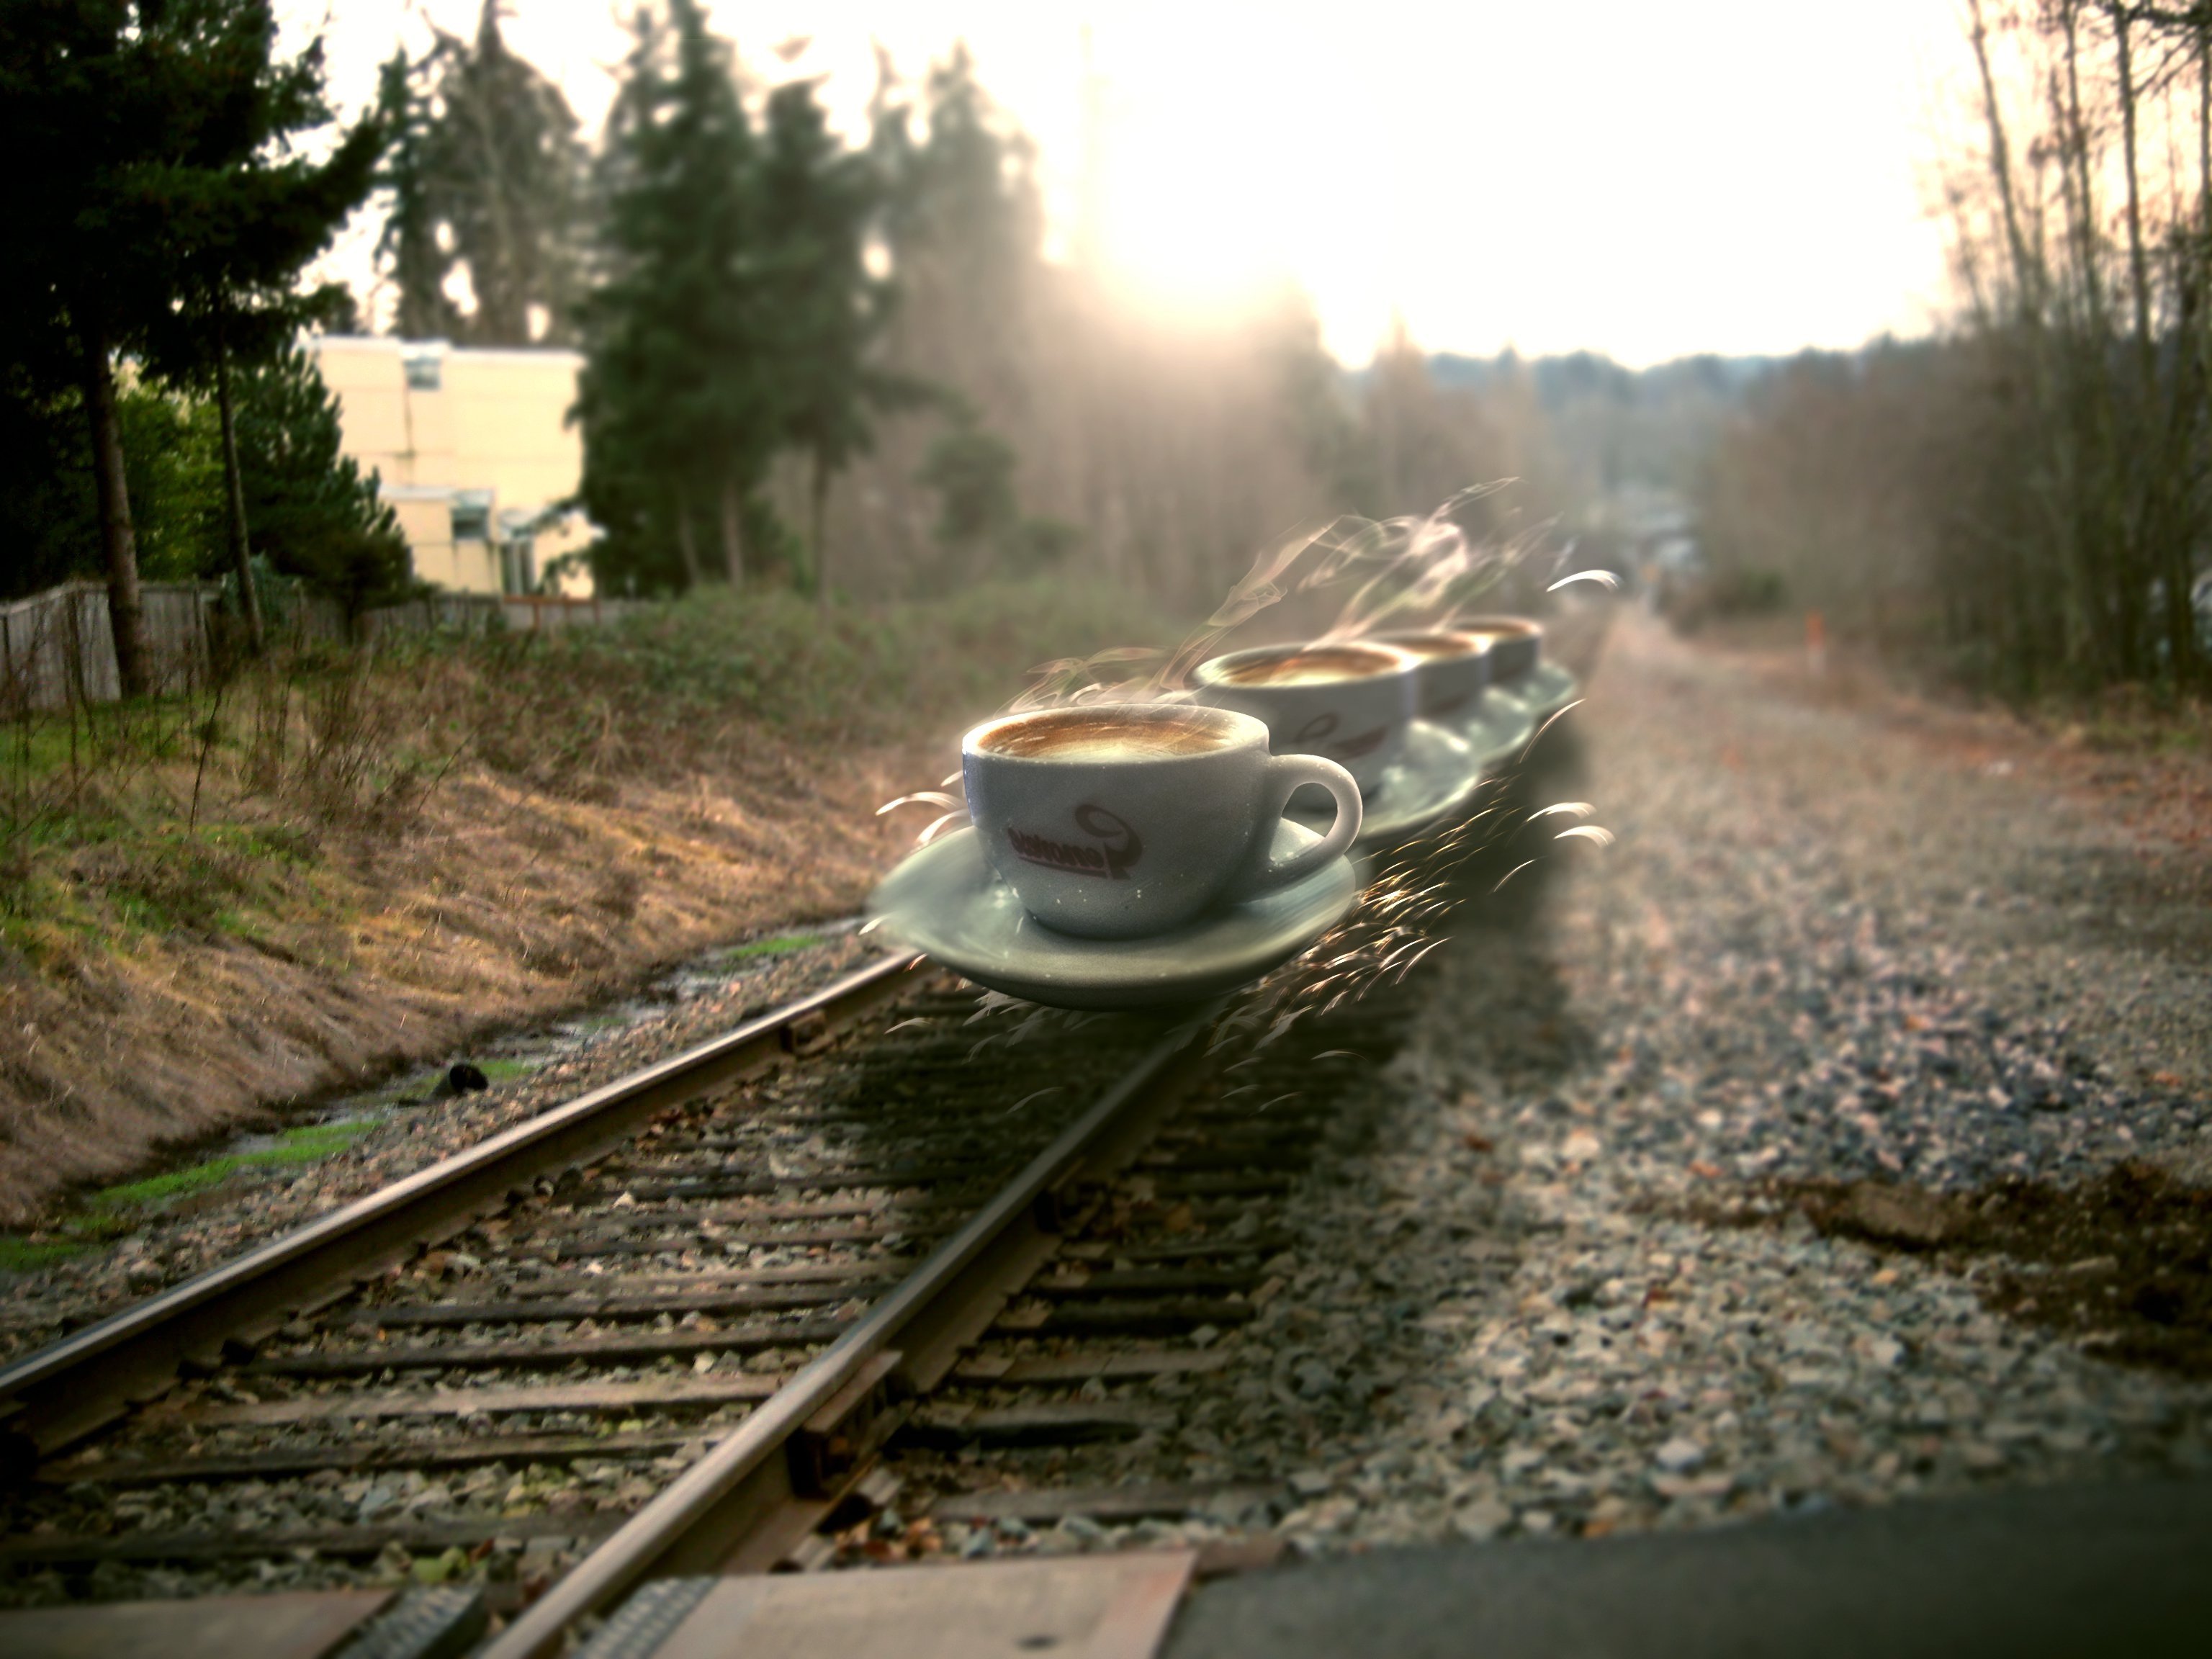 Картинка счастливой дороги на поезде. Утренний поезд. Счастливого пути на поезде. Доброе утро в поезде. Поезд в пути.